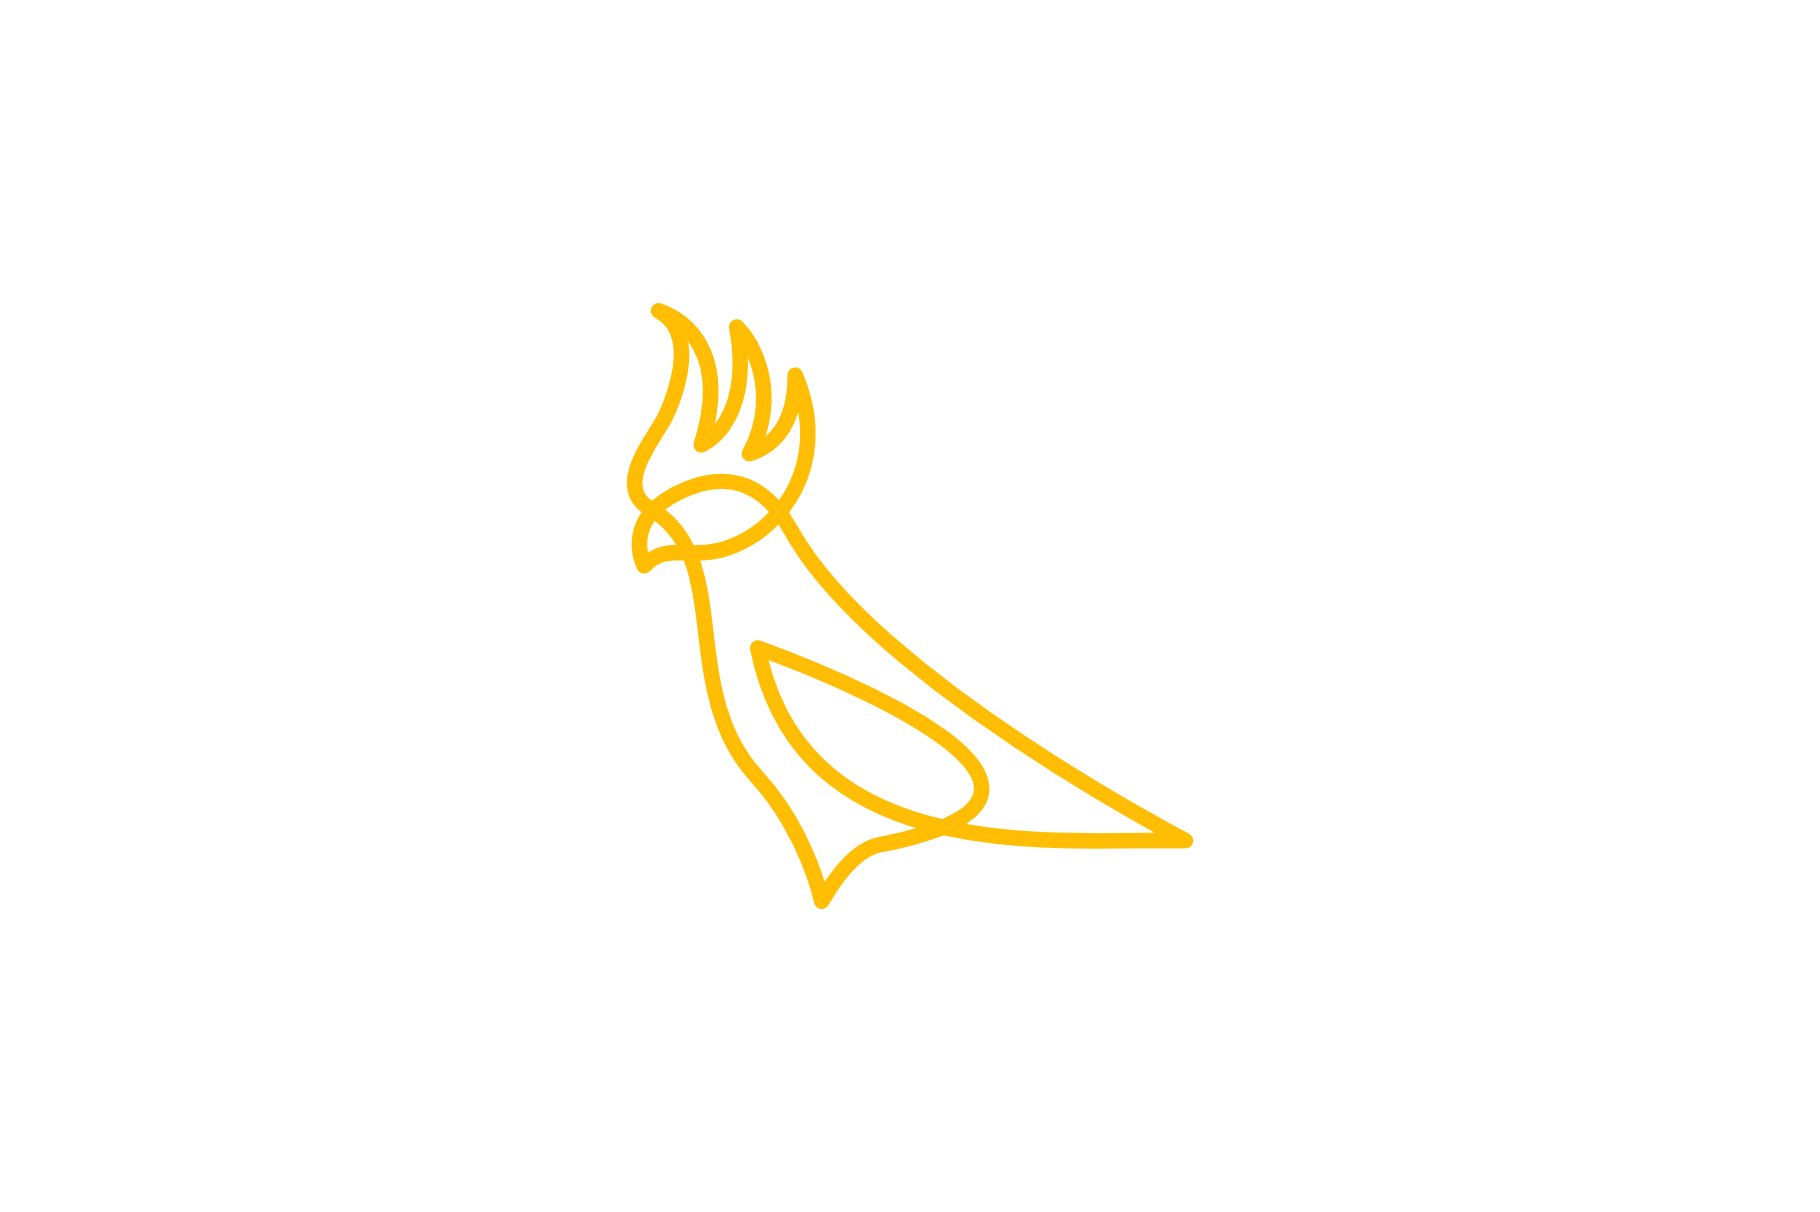 Parrot Monoline Logo preview image.